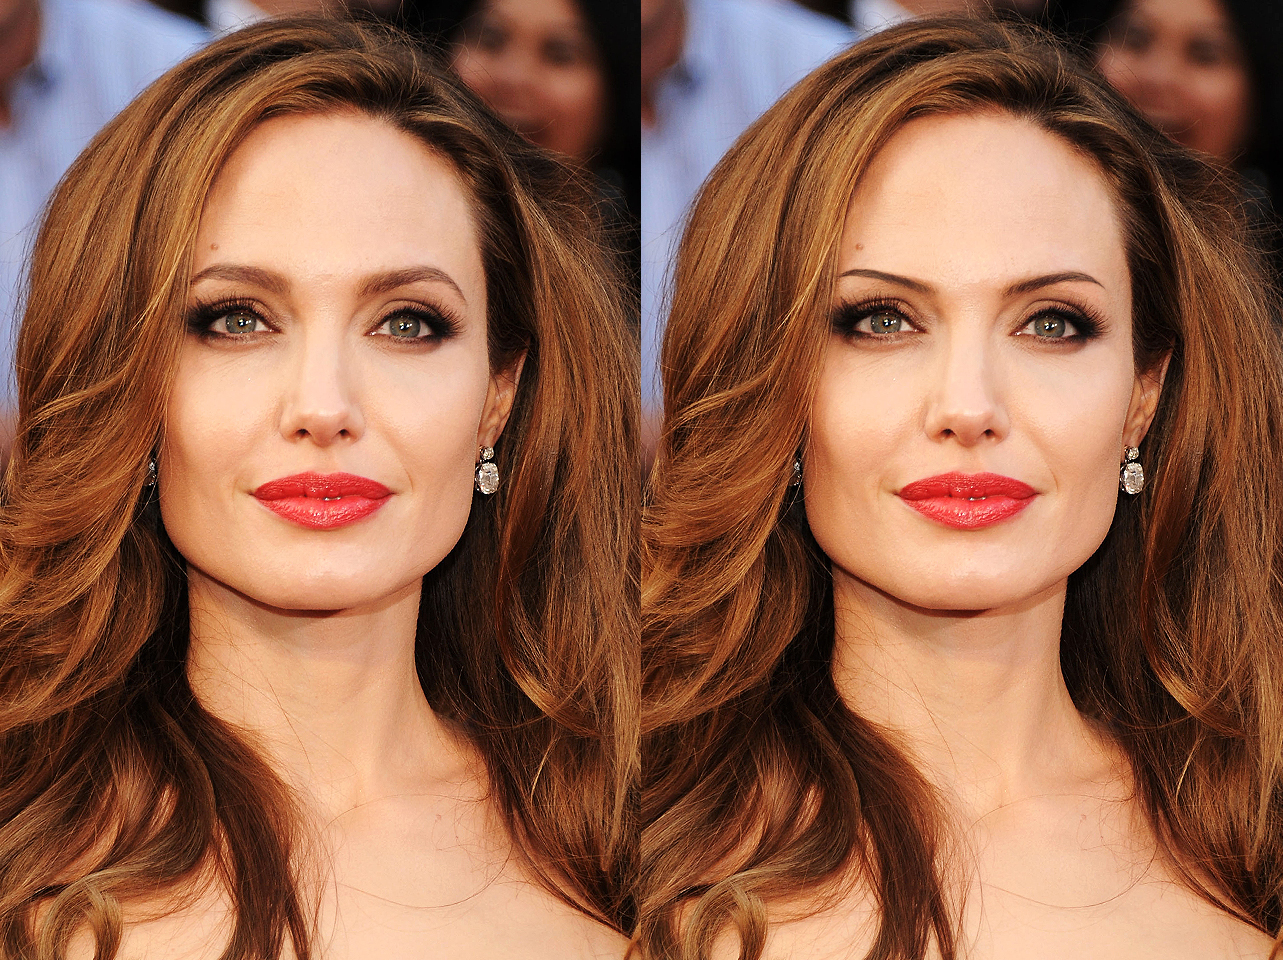 Las atrevidas cejas originales de Angelina Jolie de 2012 frente a un look de cejas finas editado digitalmente | Fuente: Getty Images